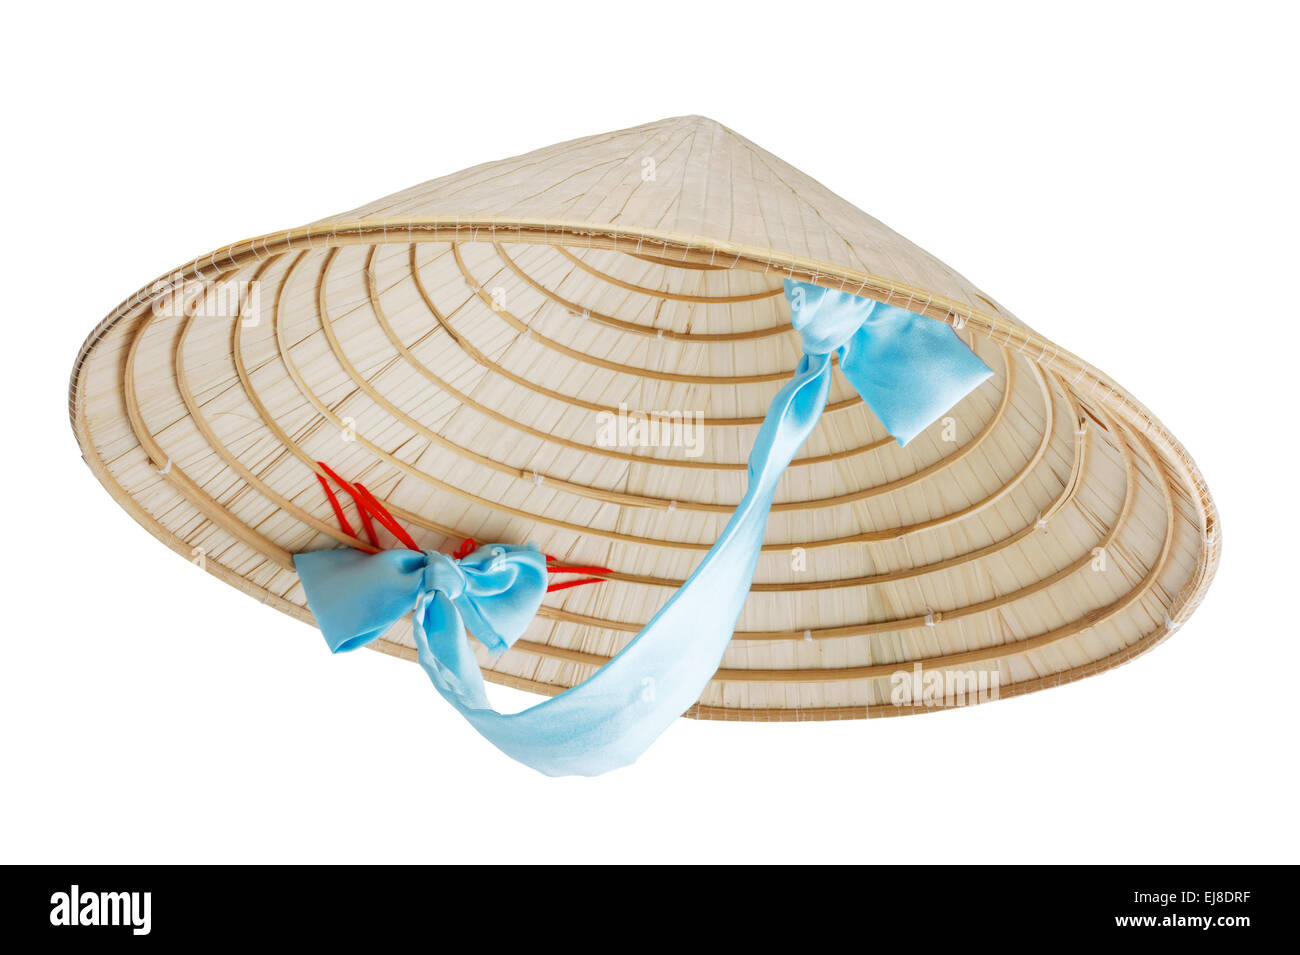 Asian conical hat Banque d'images détourées - Alamy